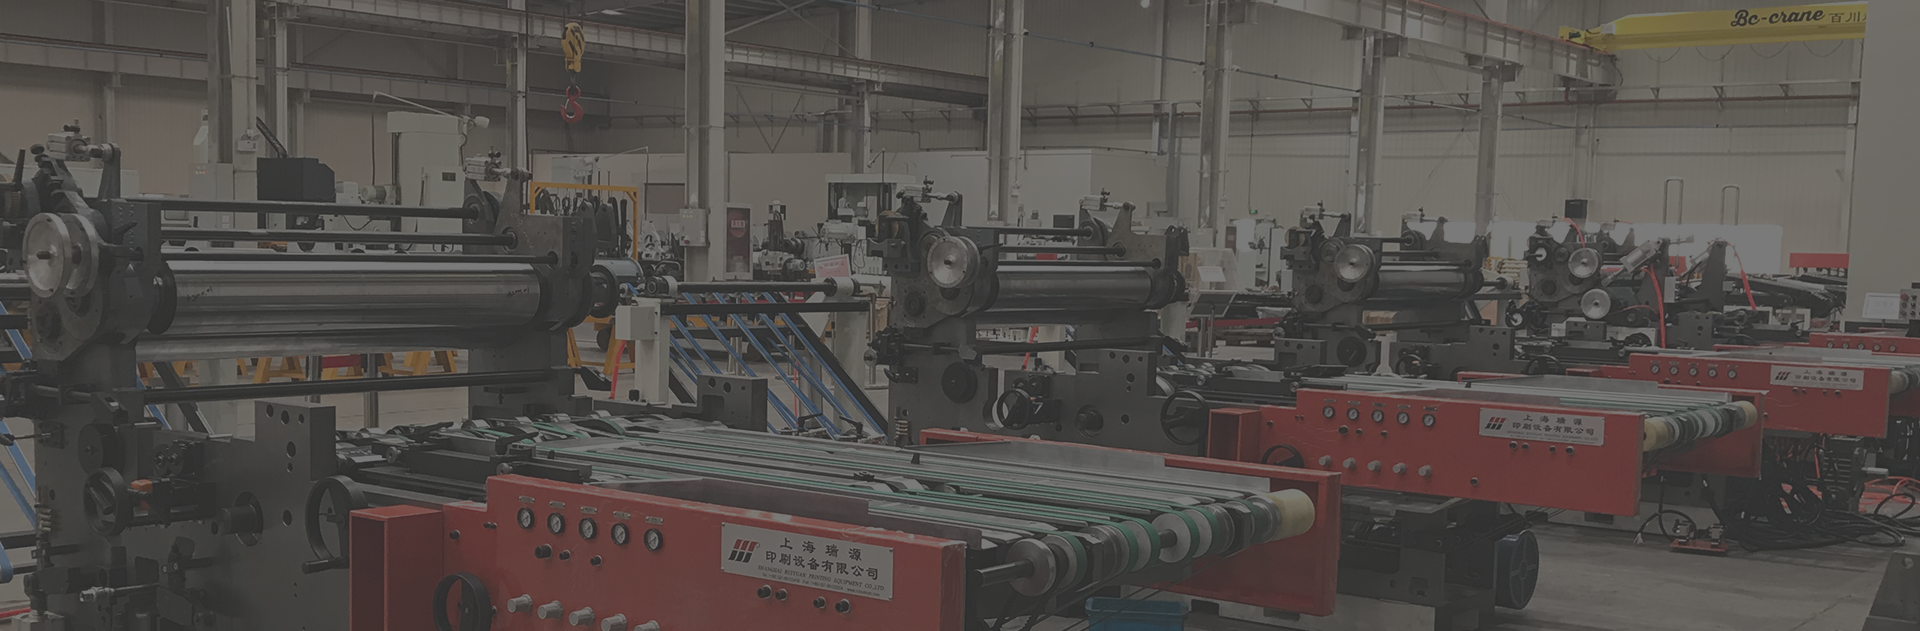 Печатание металла & лакировочные машины и решение автоматизации системы